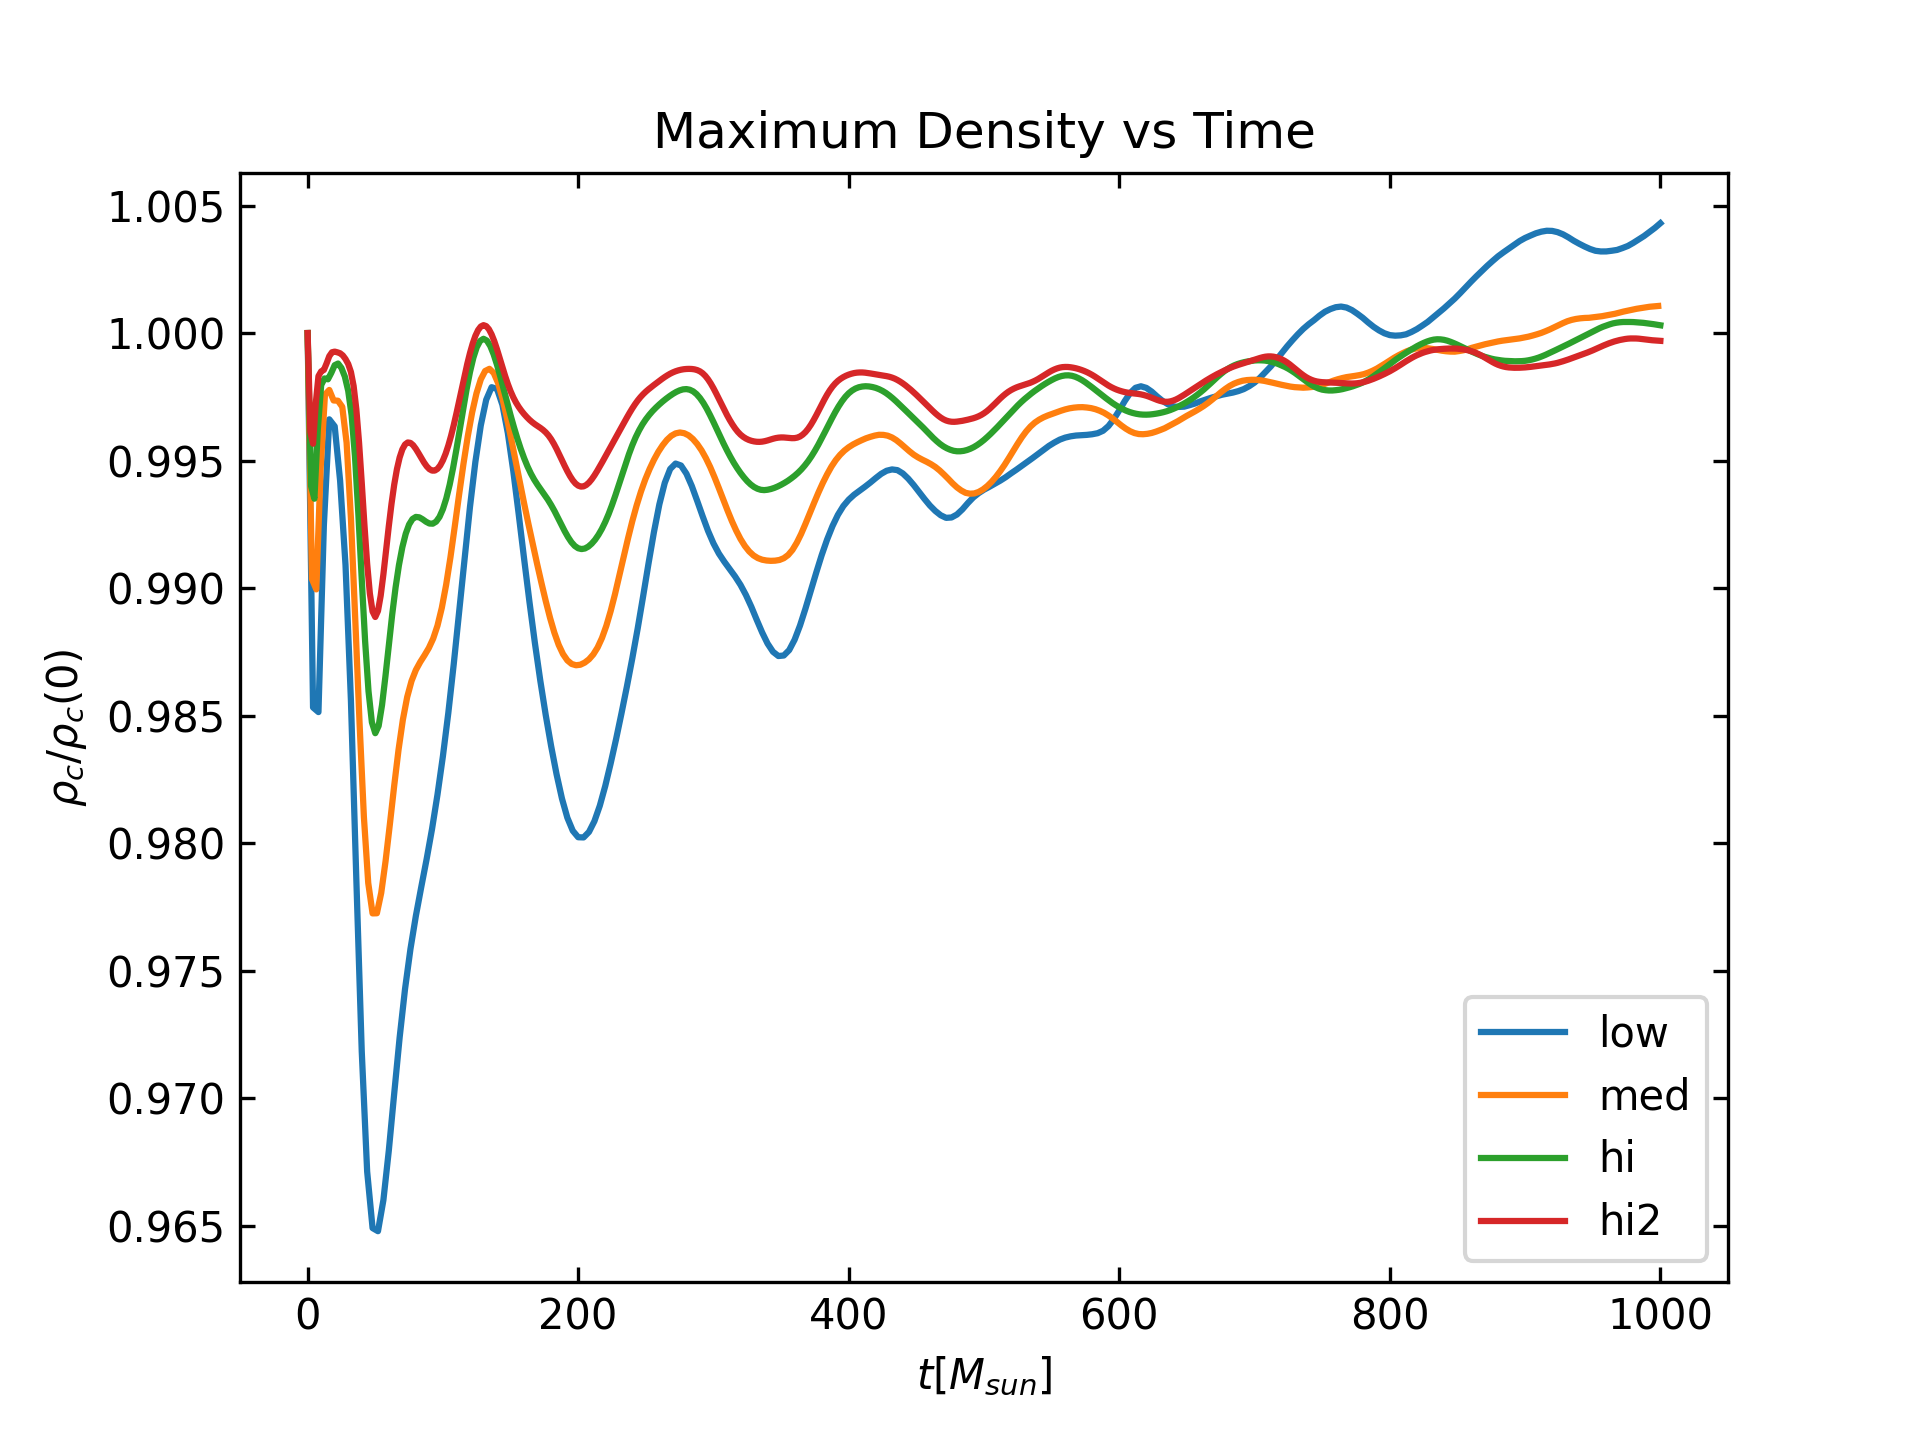 Maximum density over time